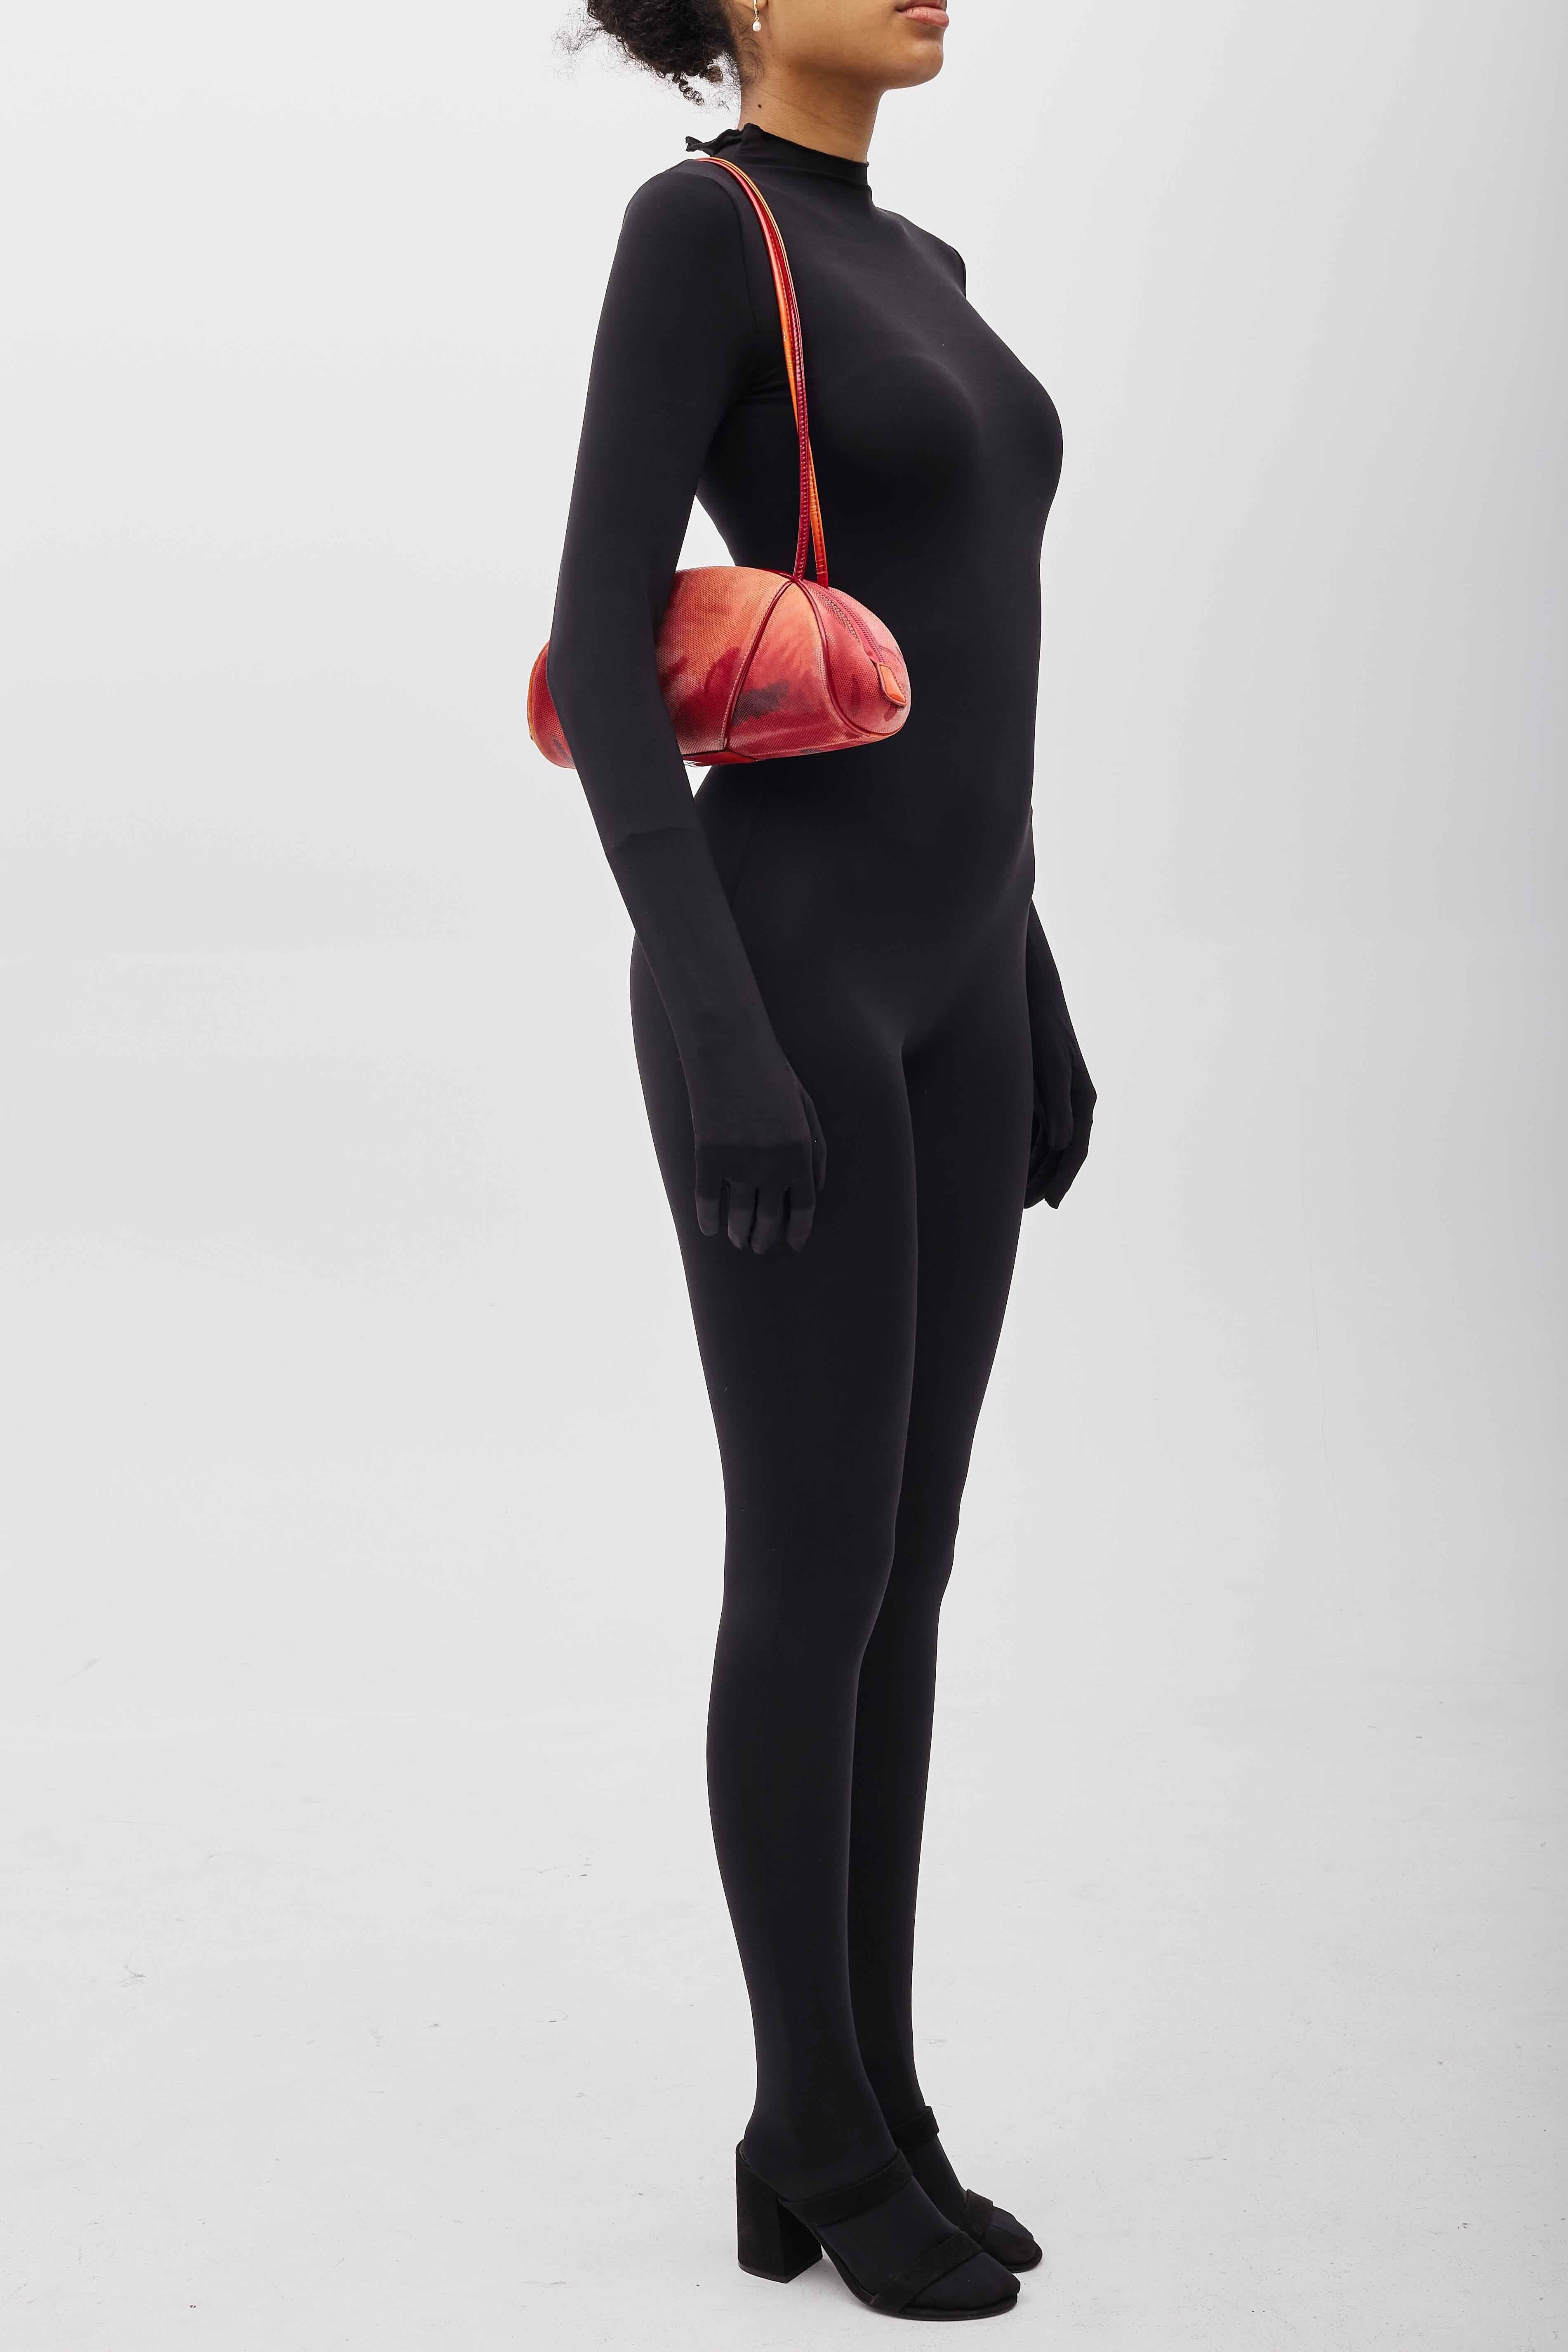 Dior Suede Oyster Multi Red Shoulder Bag For Sale 6